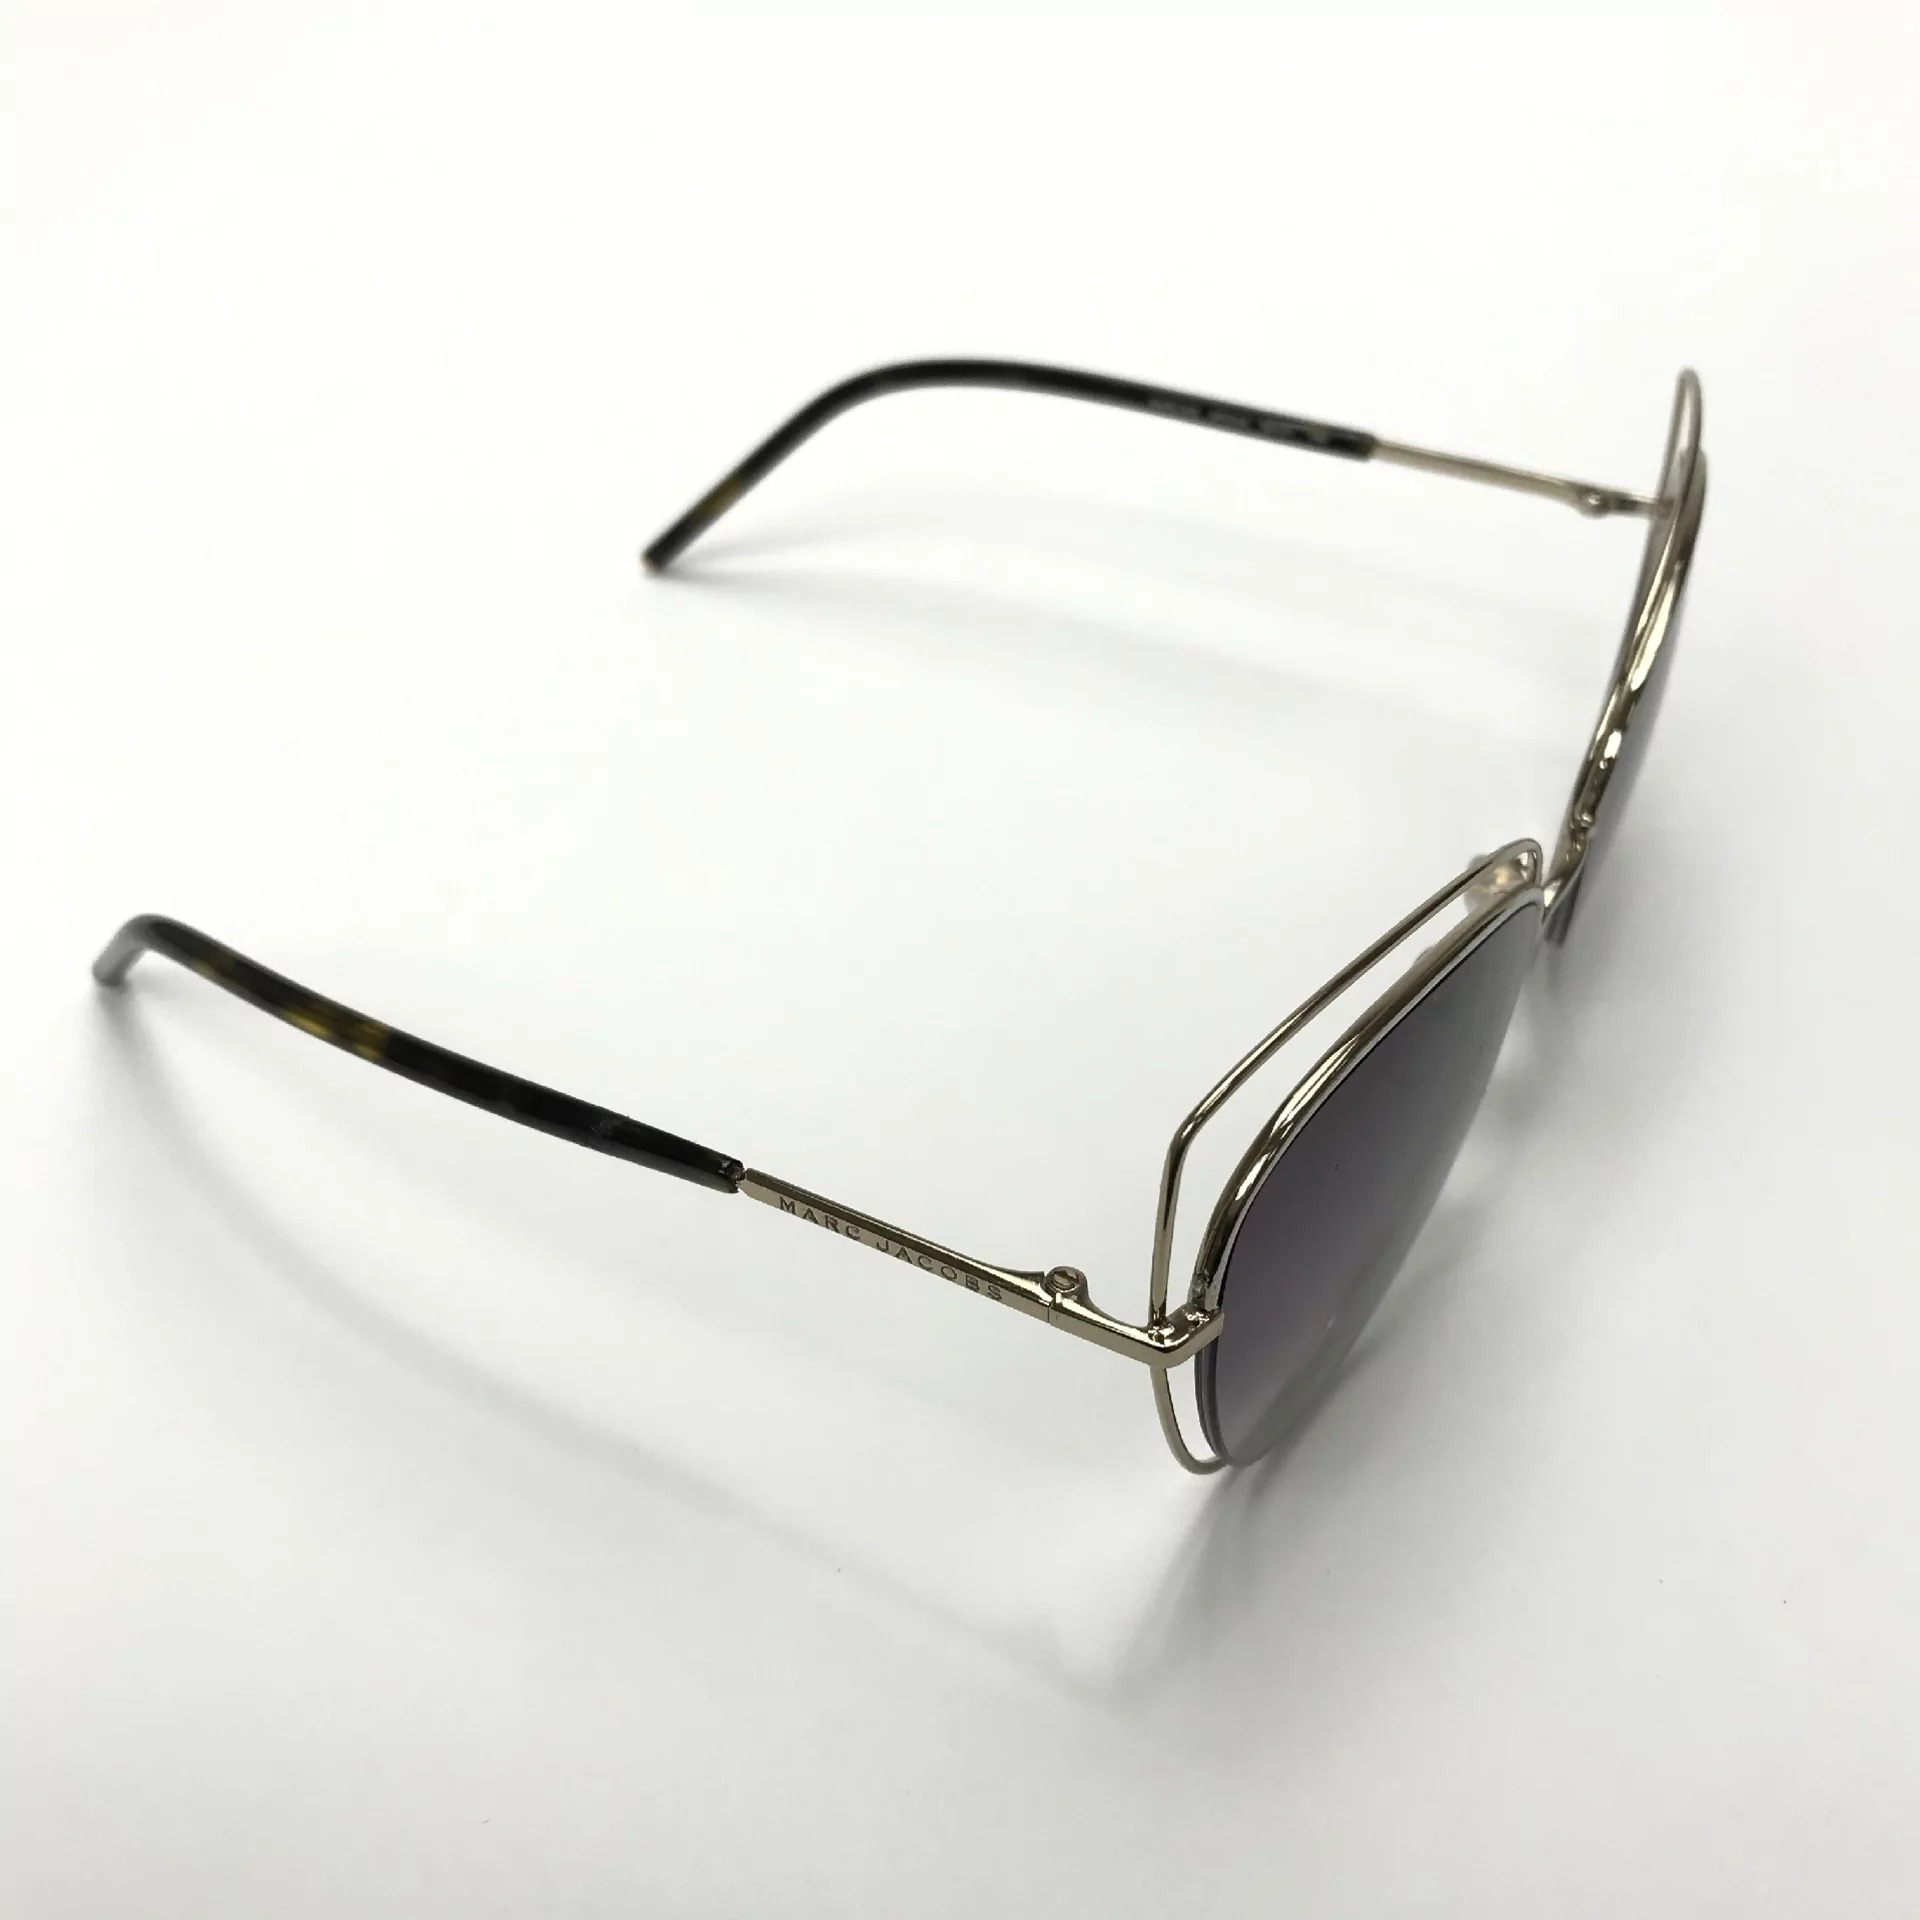 Óculos de Sol Marc Jacobs - MARC 8/S